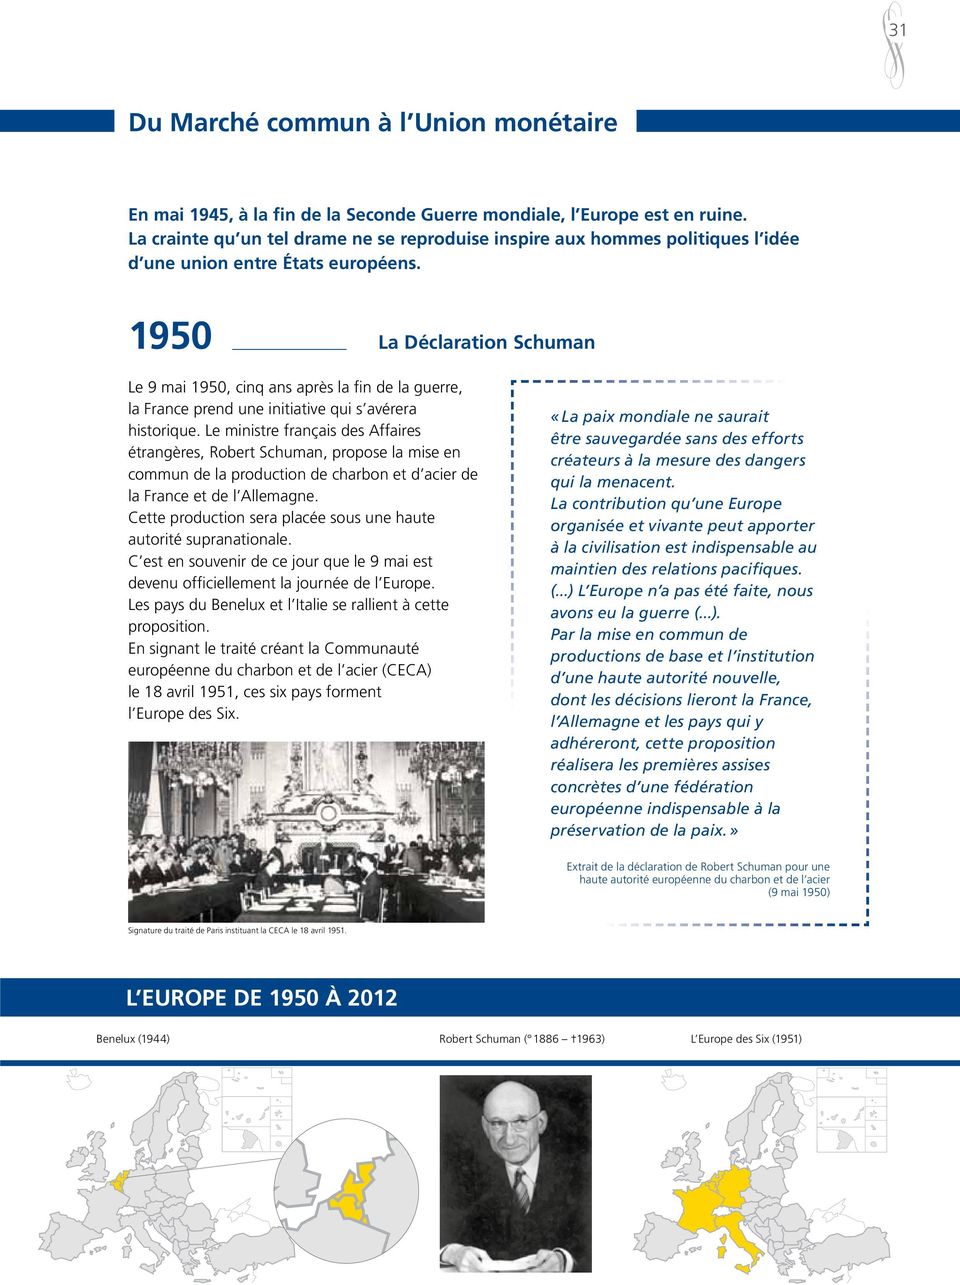 1950 La Déclaration Schuman Le 9 mai 1950, cinq ans après la fin de la guerre, la France prend une initiative qui s avérera historique.